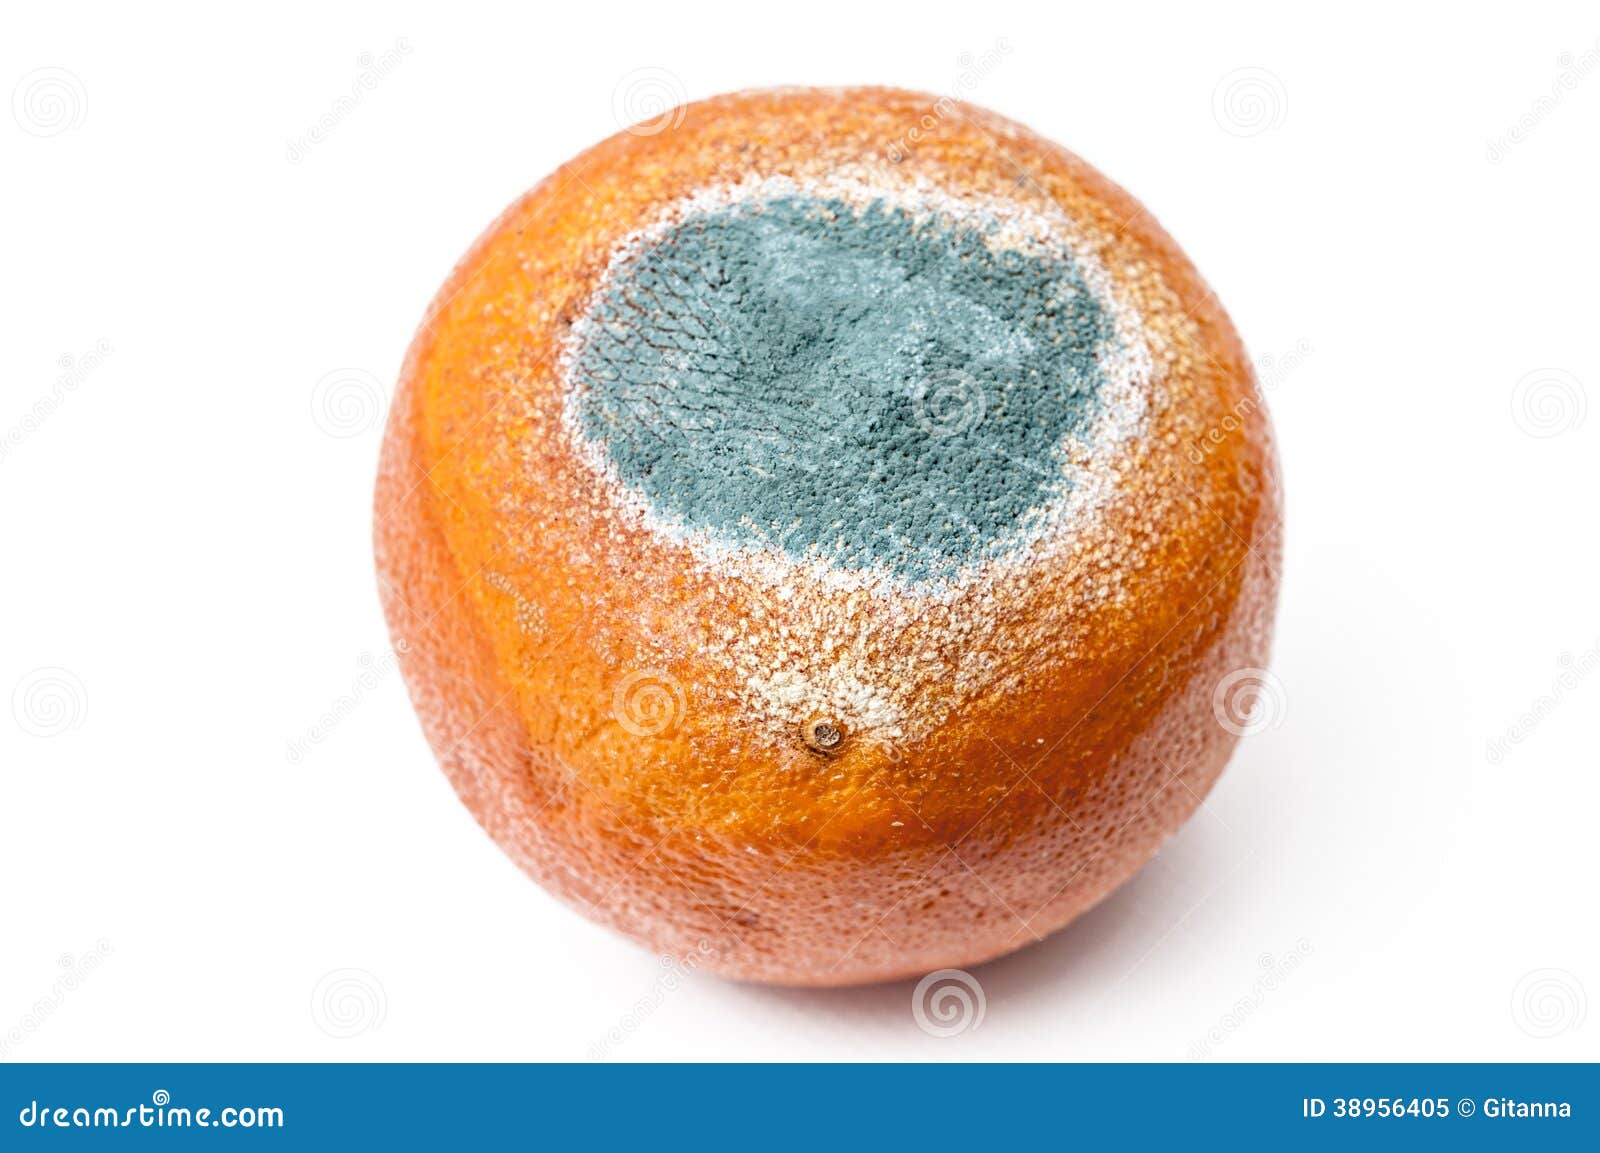 Rotten Orange Stock Image Image Of White Fruit Perishable 38956405